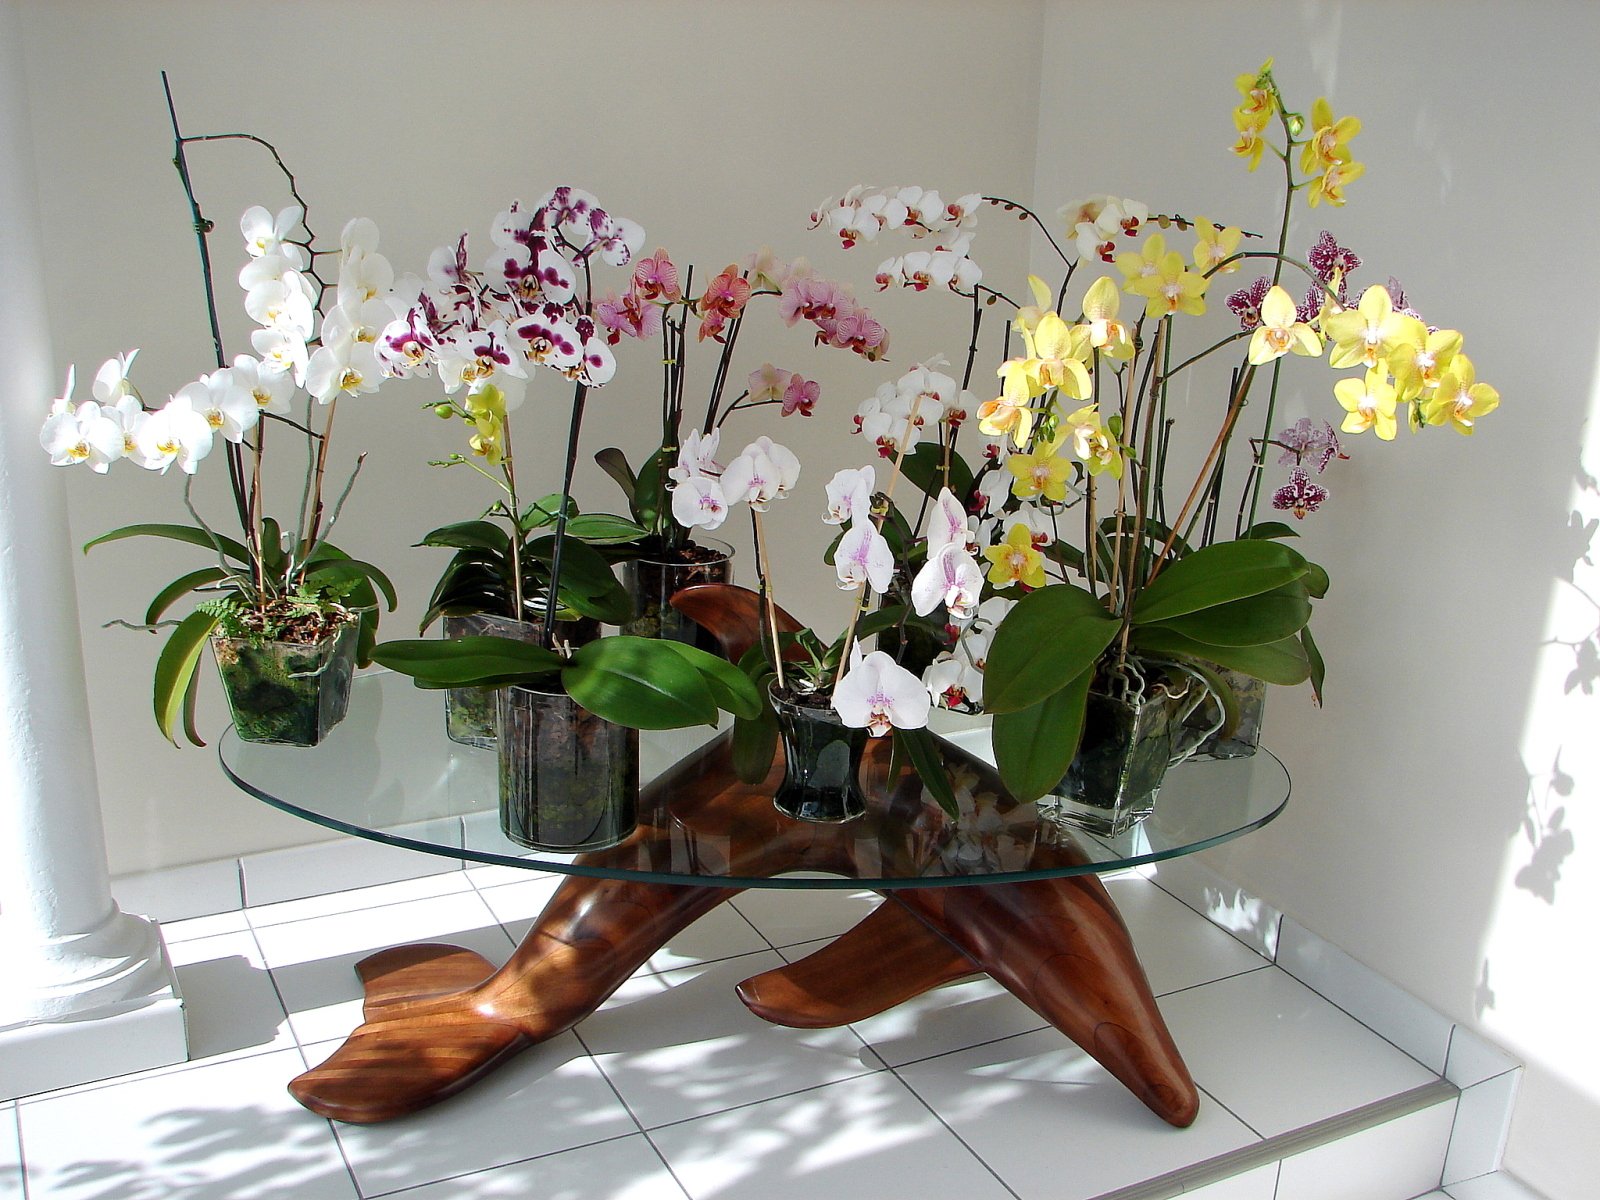 Орхидеи в горшках на подоконнике. Орхидея фаленопсис в горшке. Комнатный цветок Орхидея фаленопсис. Фаленопсис мультифлора белая. Орхидея фаленопсис бабочка.